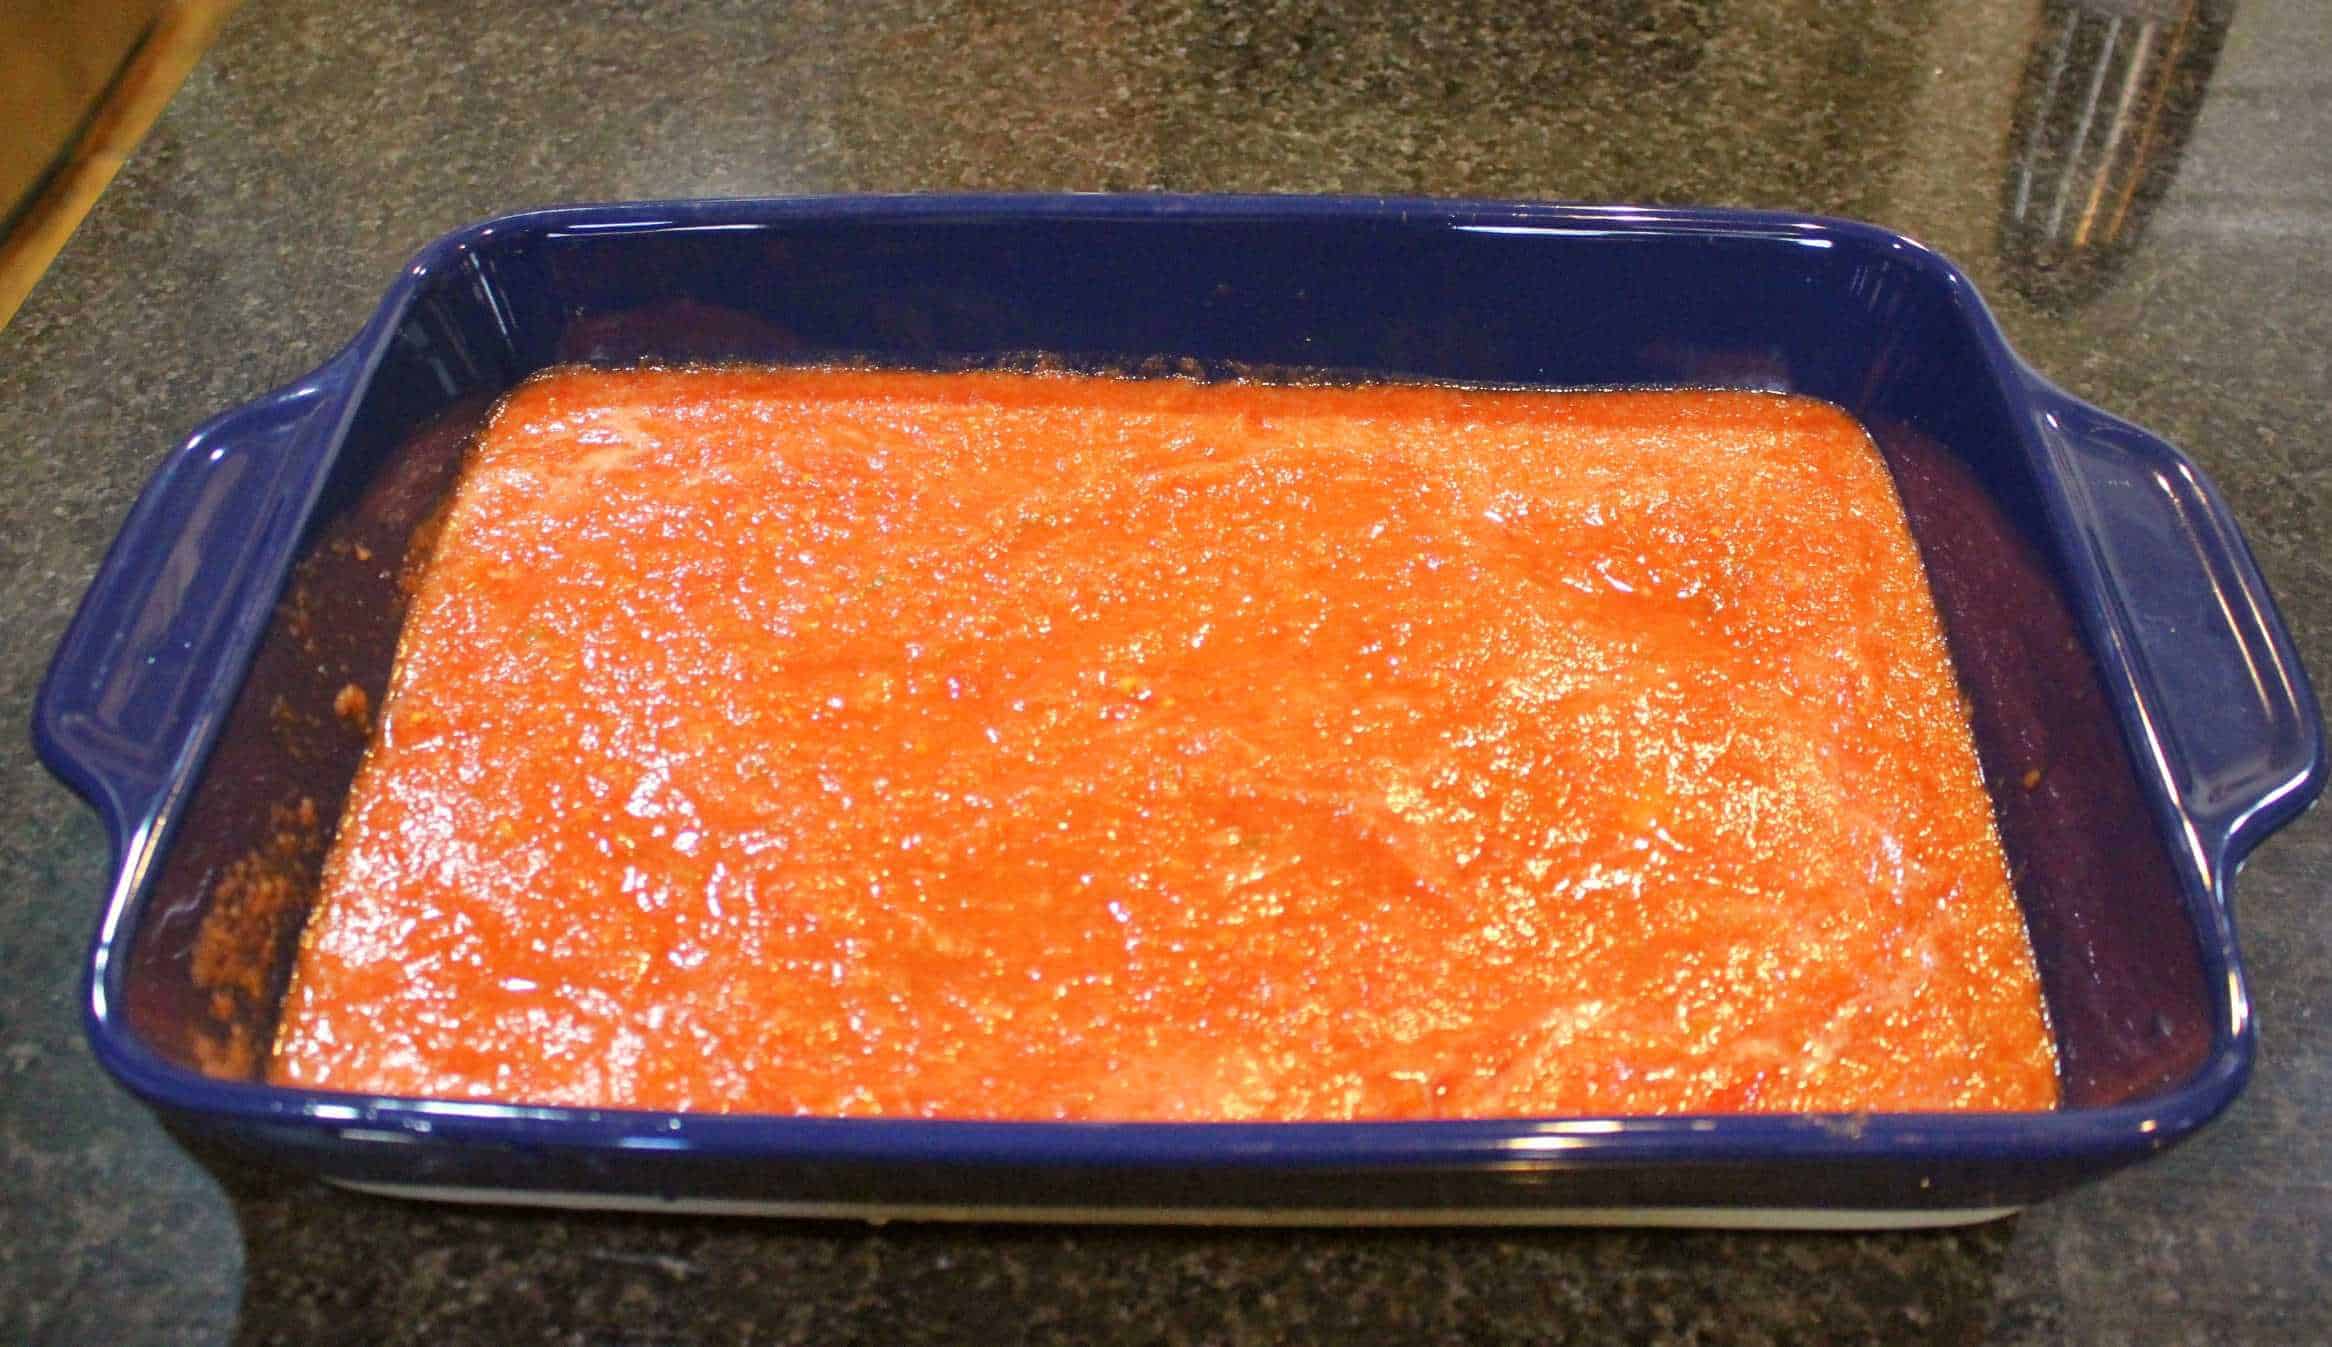 tomato sauce in a blue casserole dish